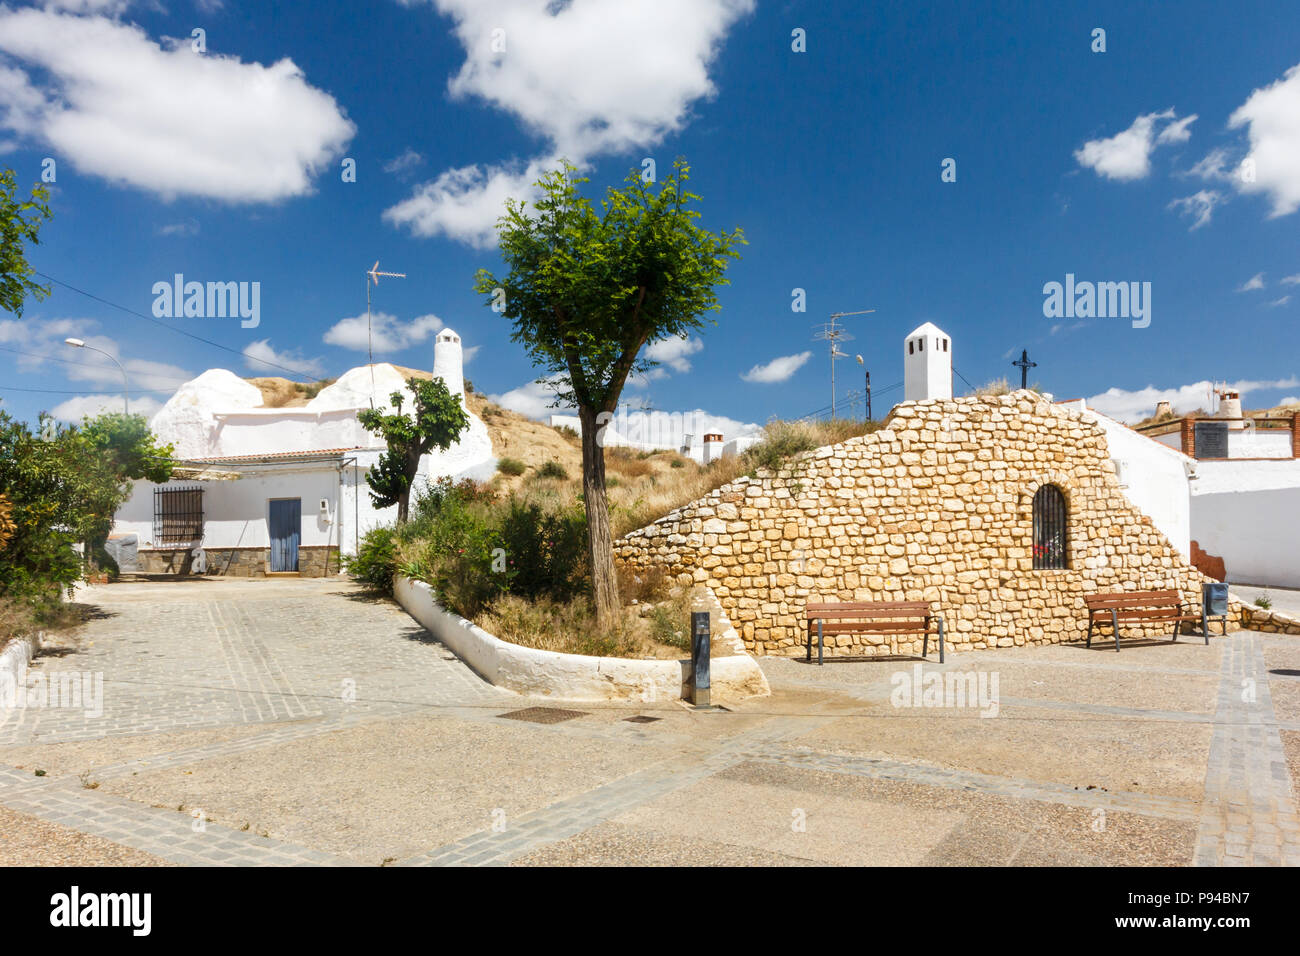 Cave house in Guadix, Granada province, Spain Stock Photo